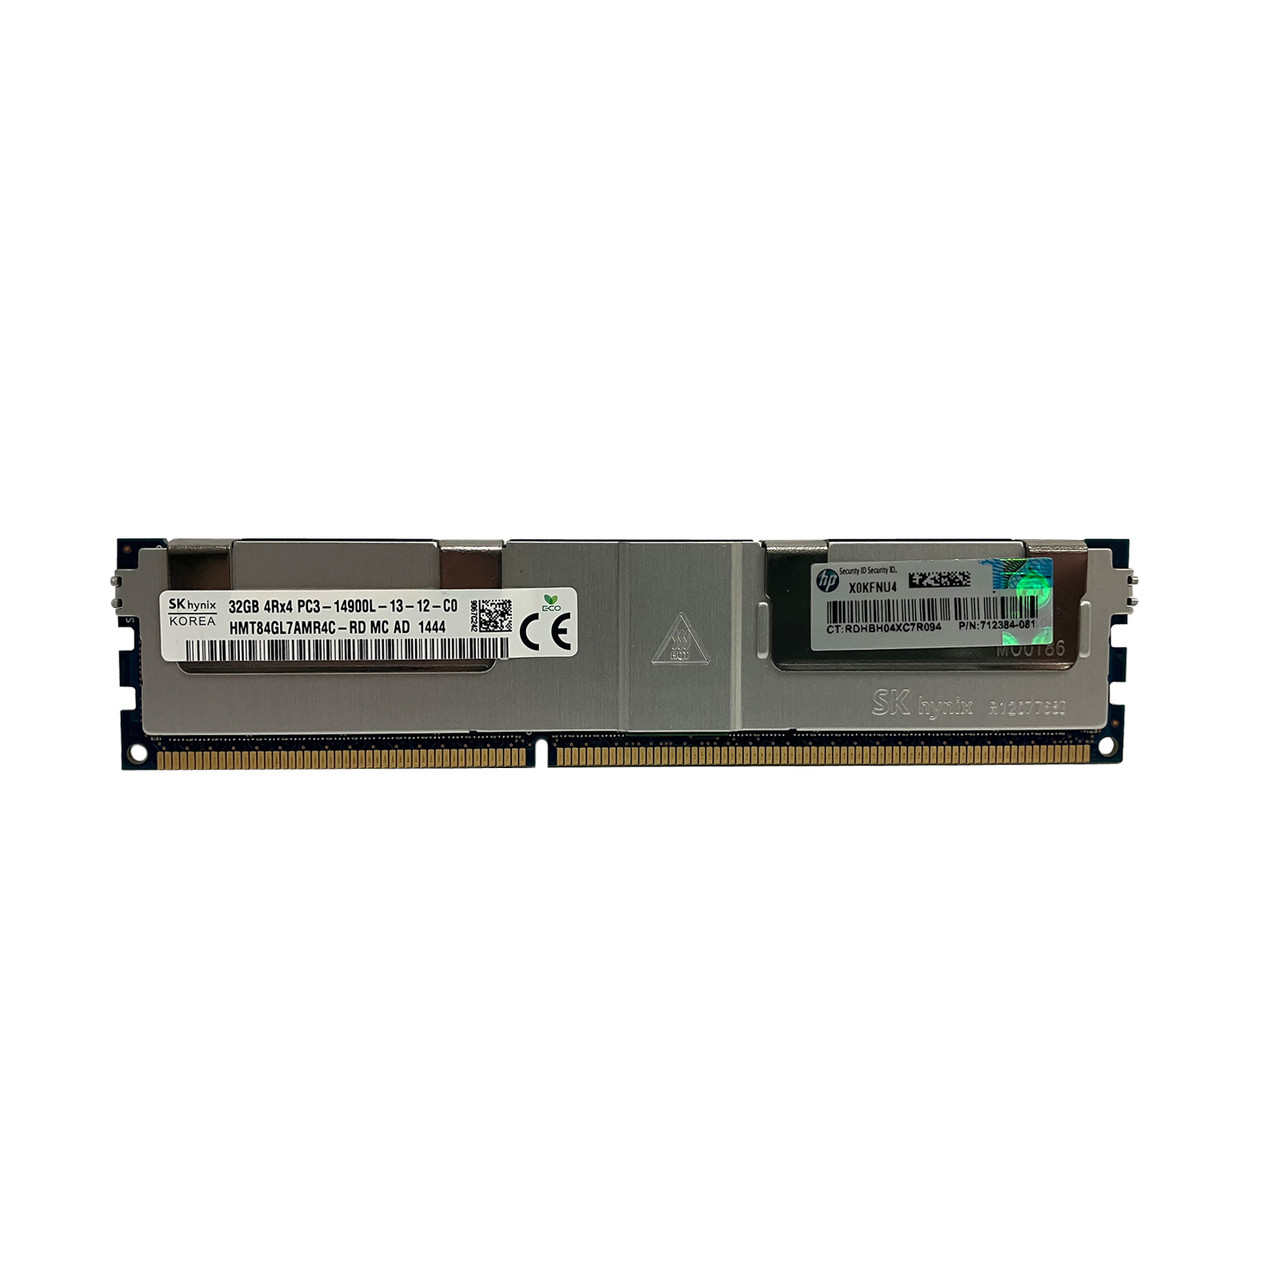 HP 712384-081 32GB 4Rx4 PC3-14900L Memory Module 708643-B21